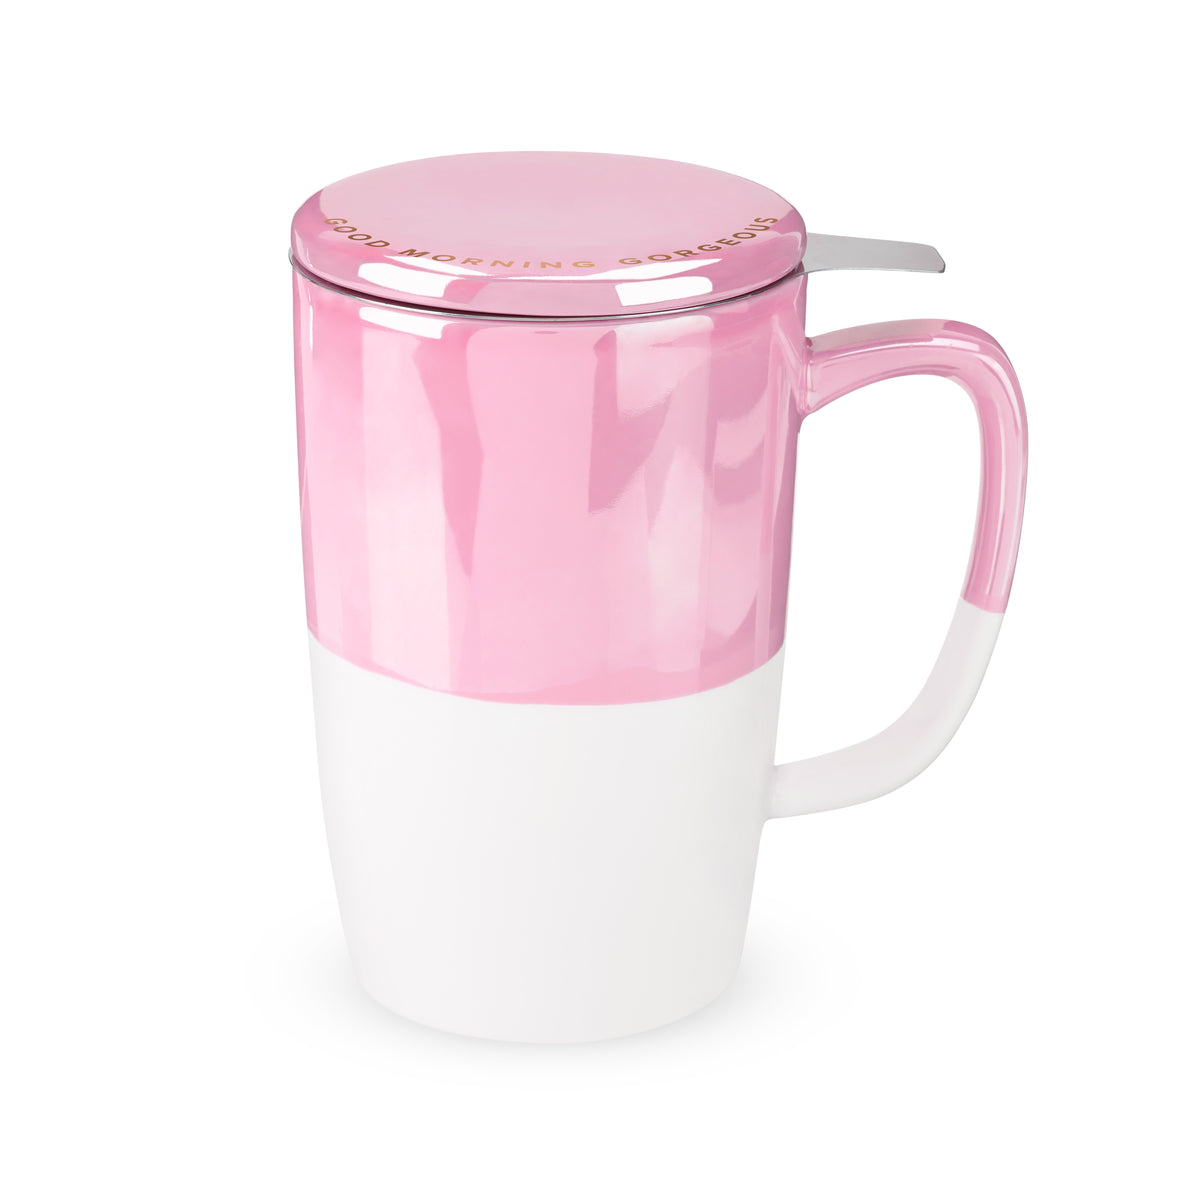  Pinky Up Tea Mug, One Size, Pink